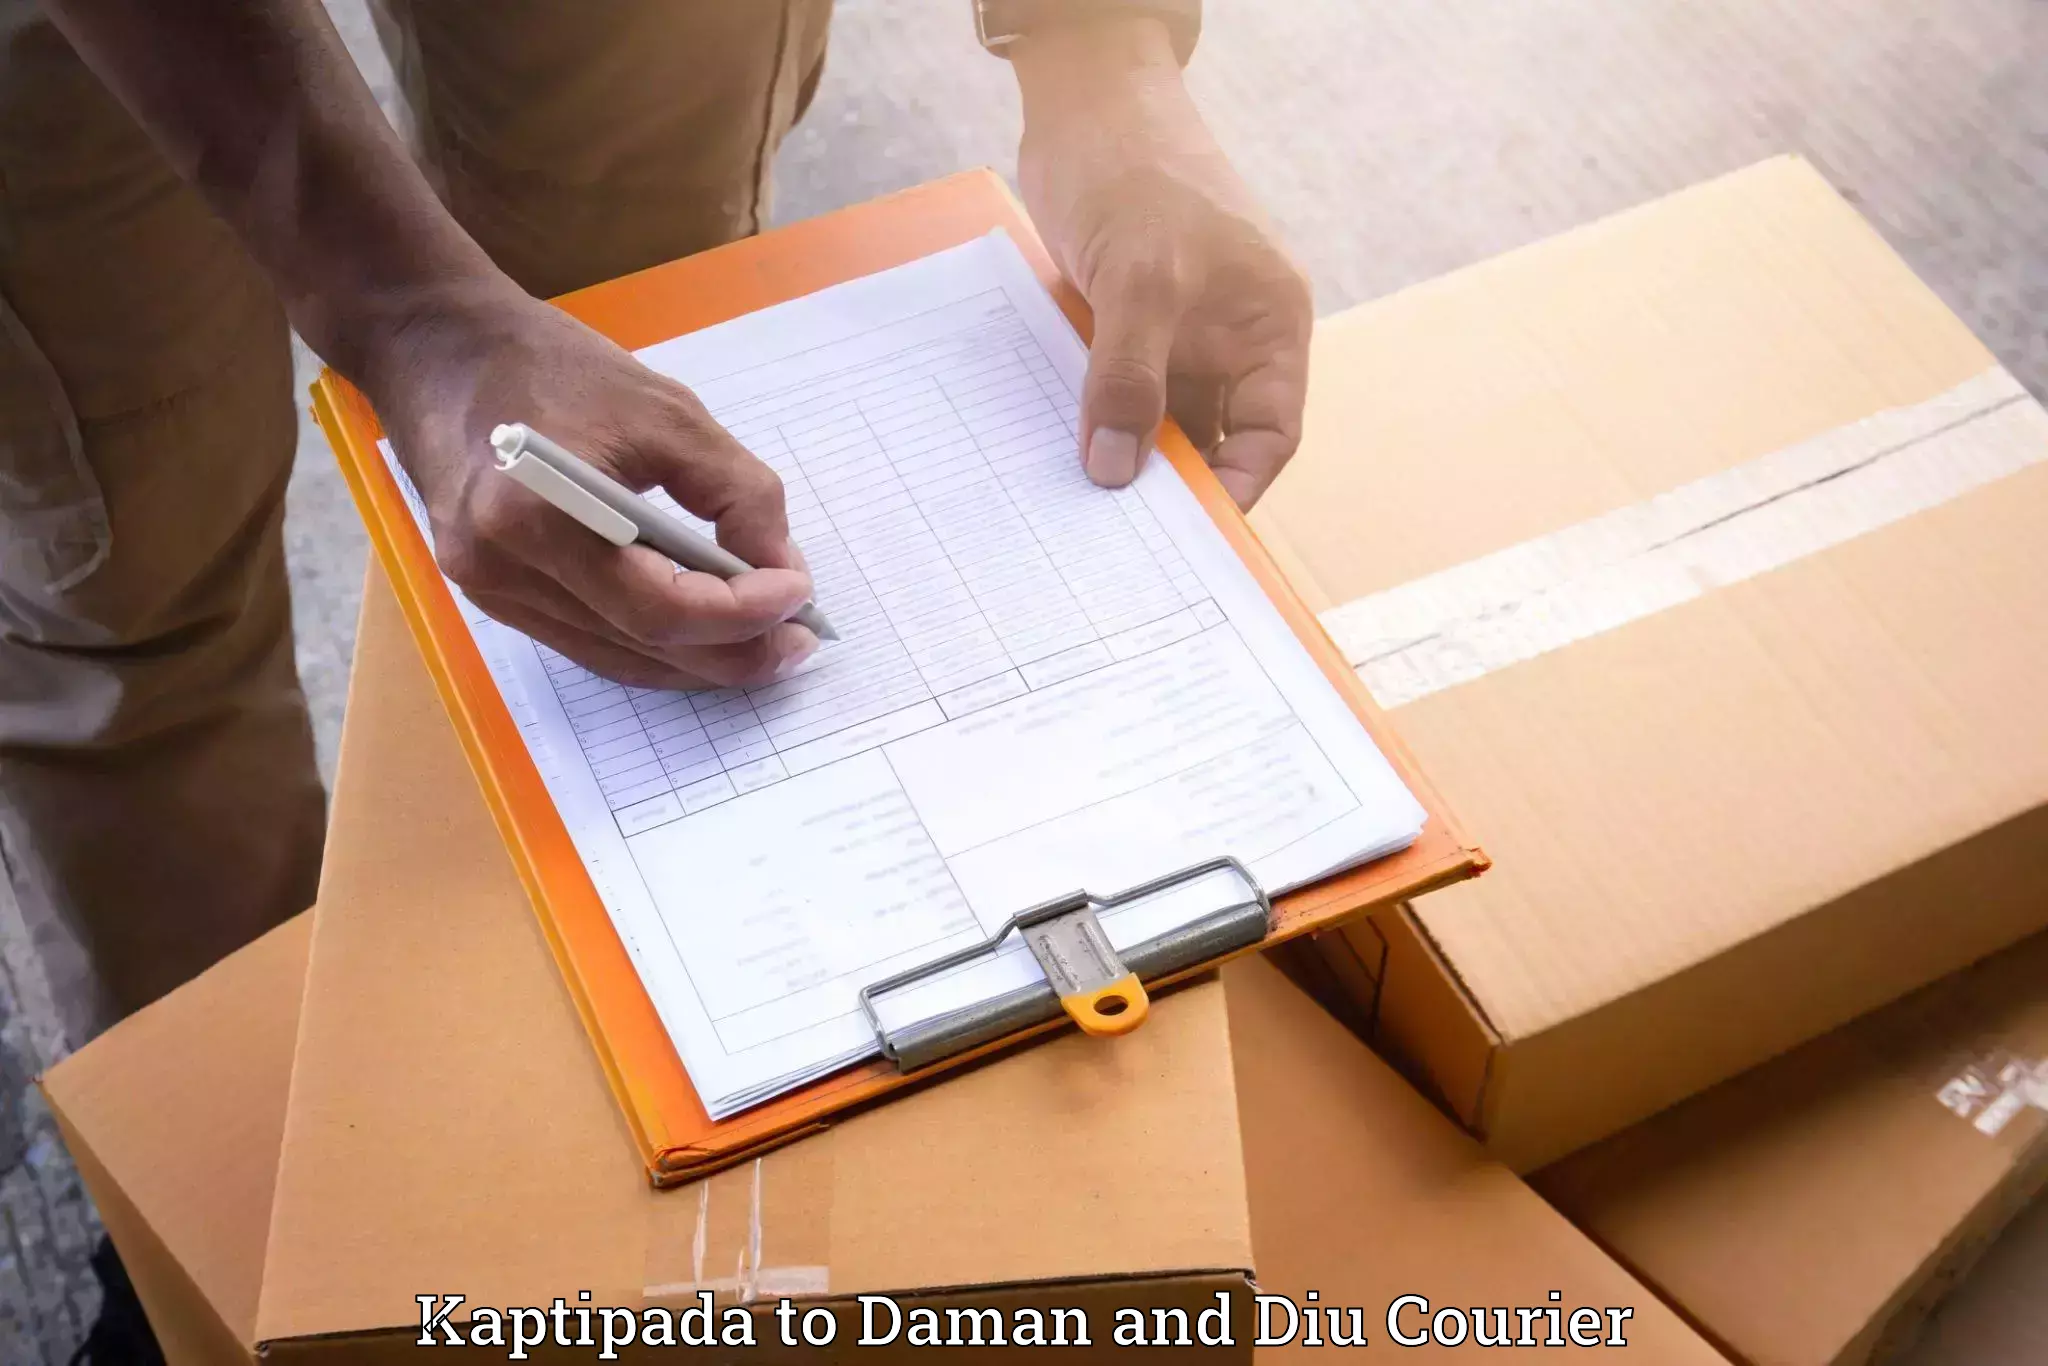 Personalized moving service Kaptipada to Daman